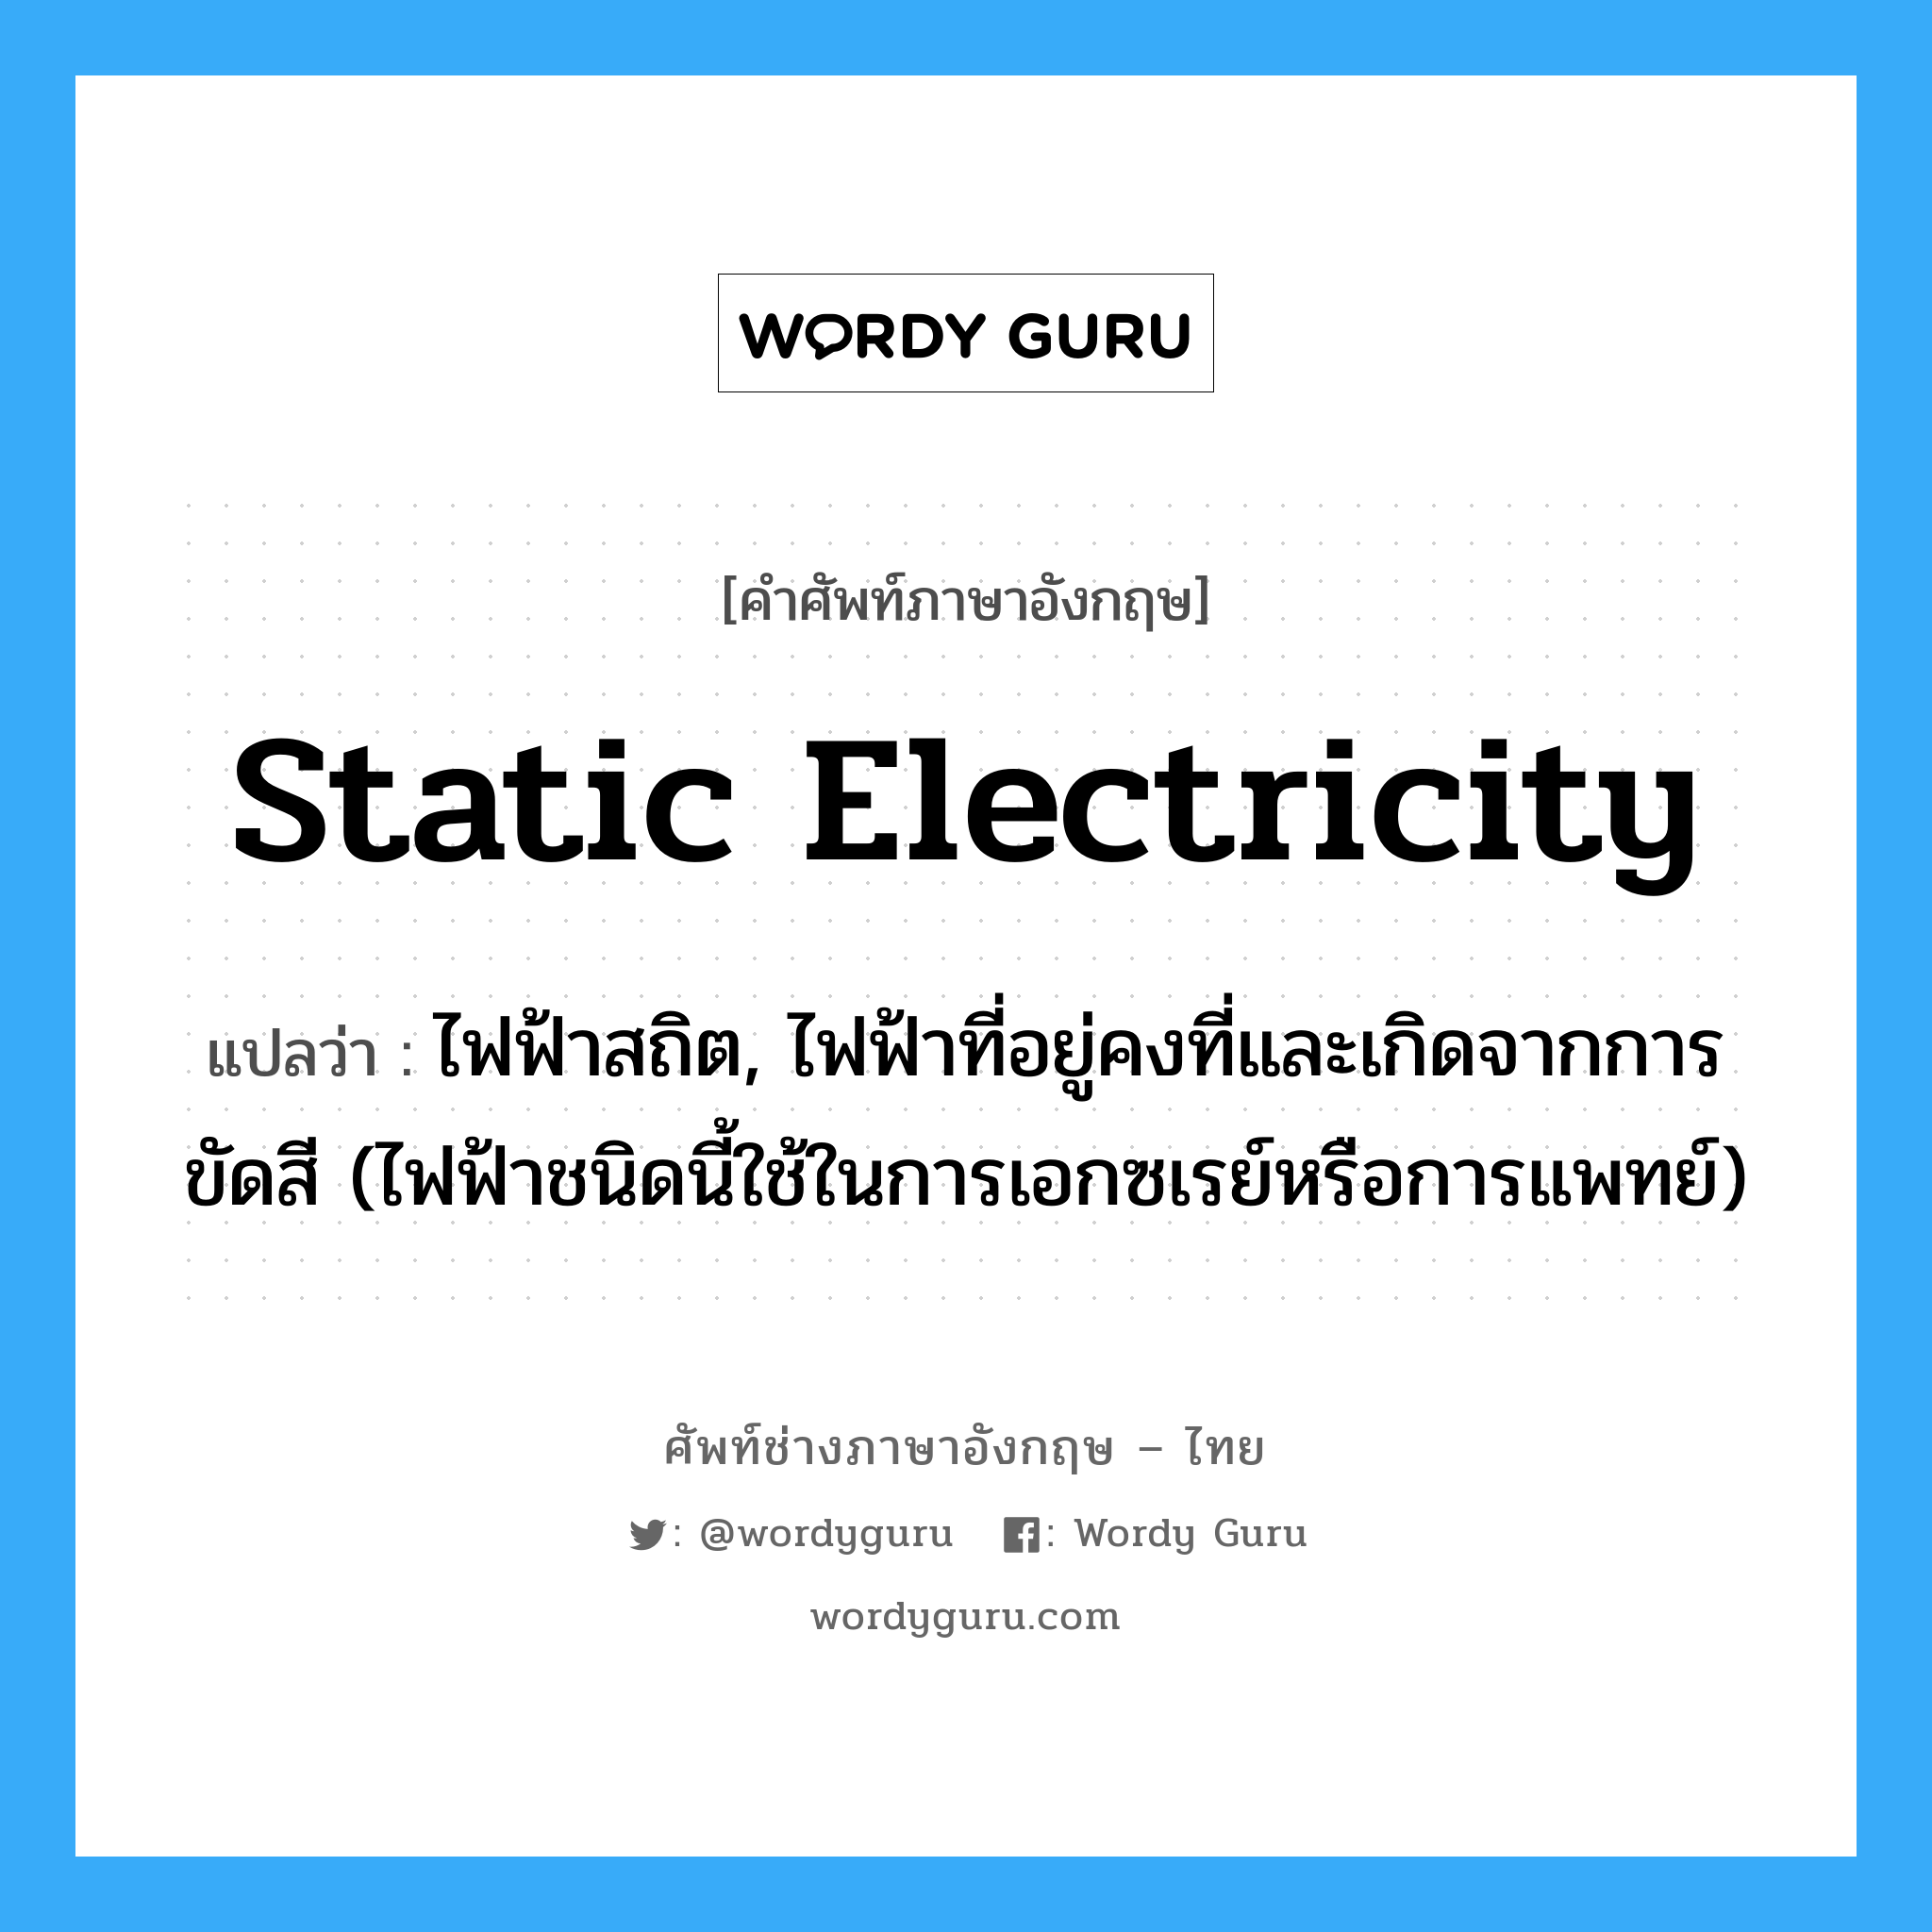 static electricity แปลว่า?, คำศัพท์ช่างภาษาอังกฤษ - ไทย static electricity คำศัพท์ภาษาอังกฤษ static electricity แปลว่า ไฟฟ้าสถิต, ไฟฟ้าที่อยู่คงที่และเกิดจากการขัดสี (ไฟฟ้าชนิดนี้ใช้ในการเอกซเรย์หรือการแพทย์)